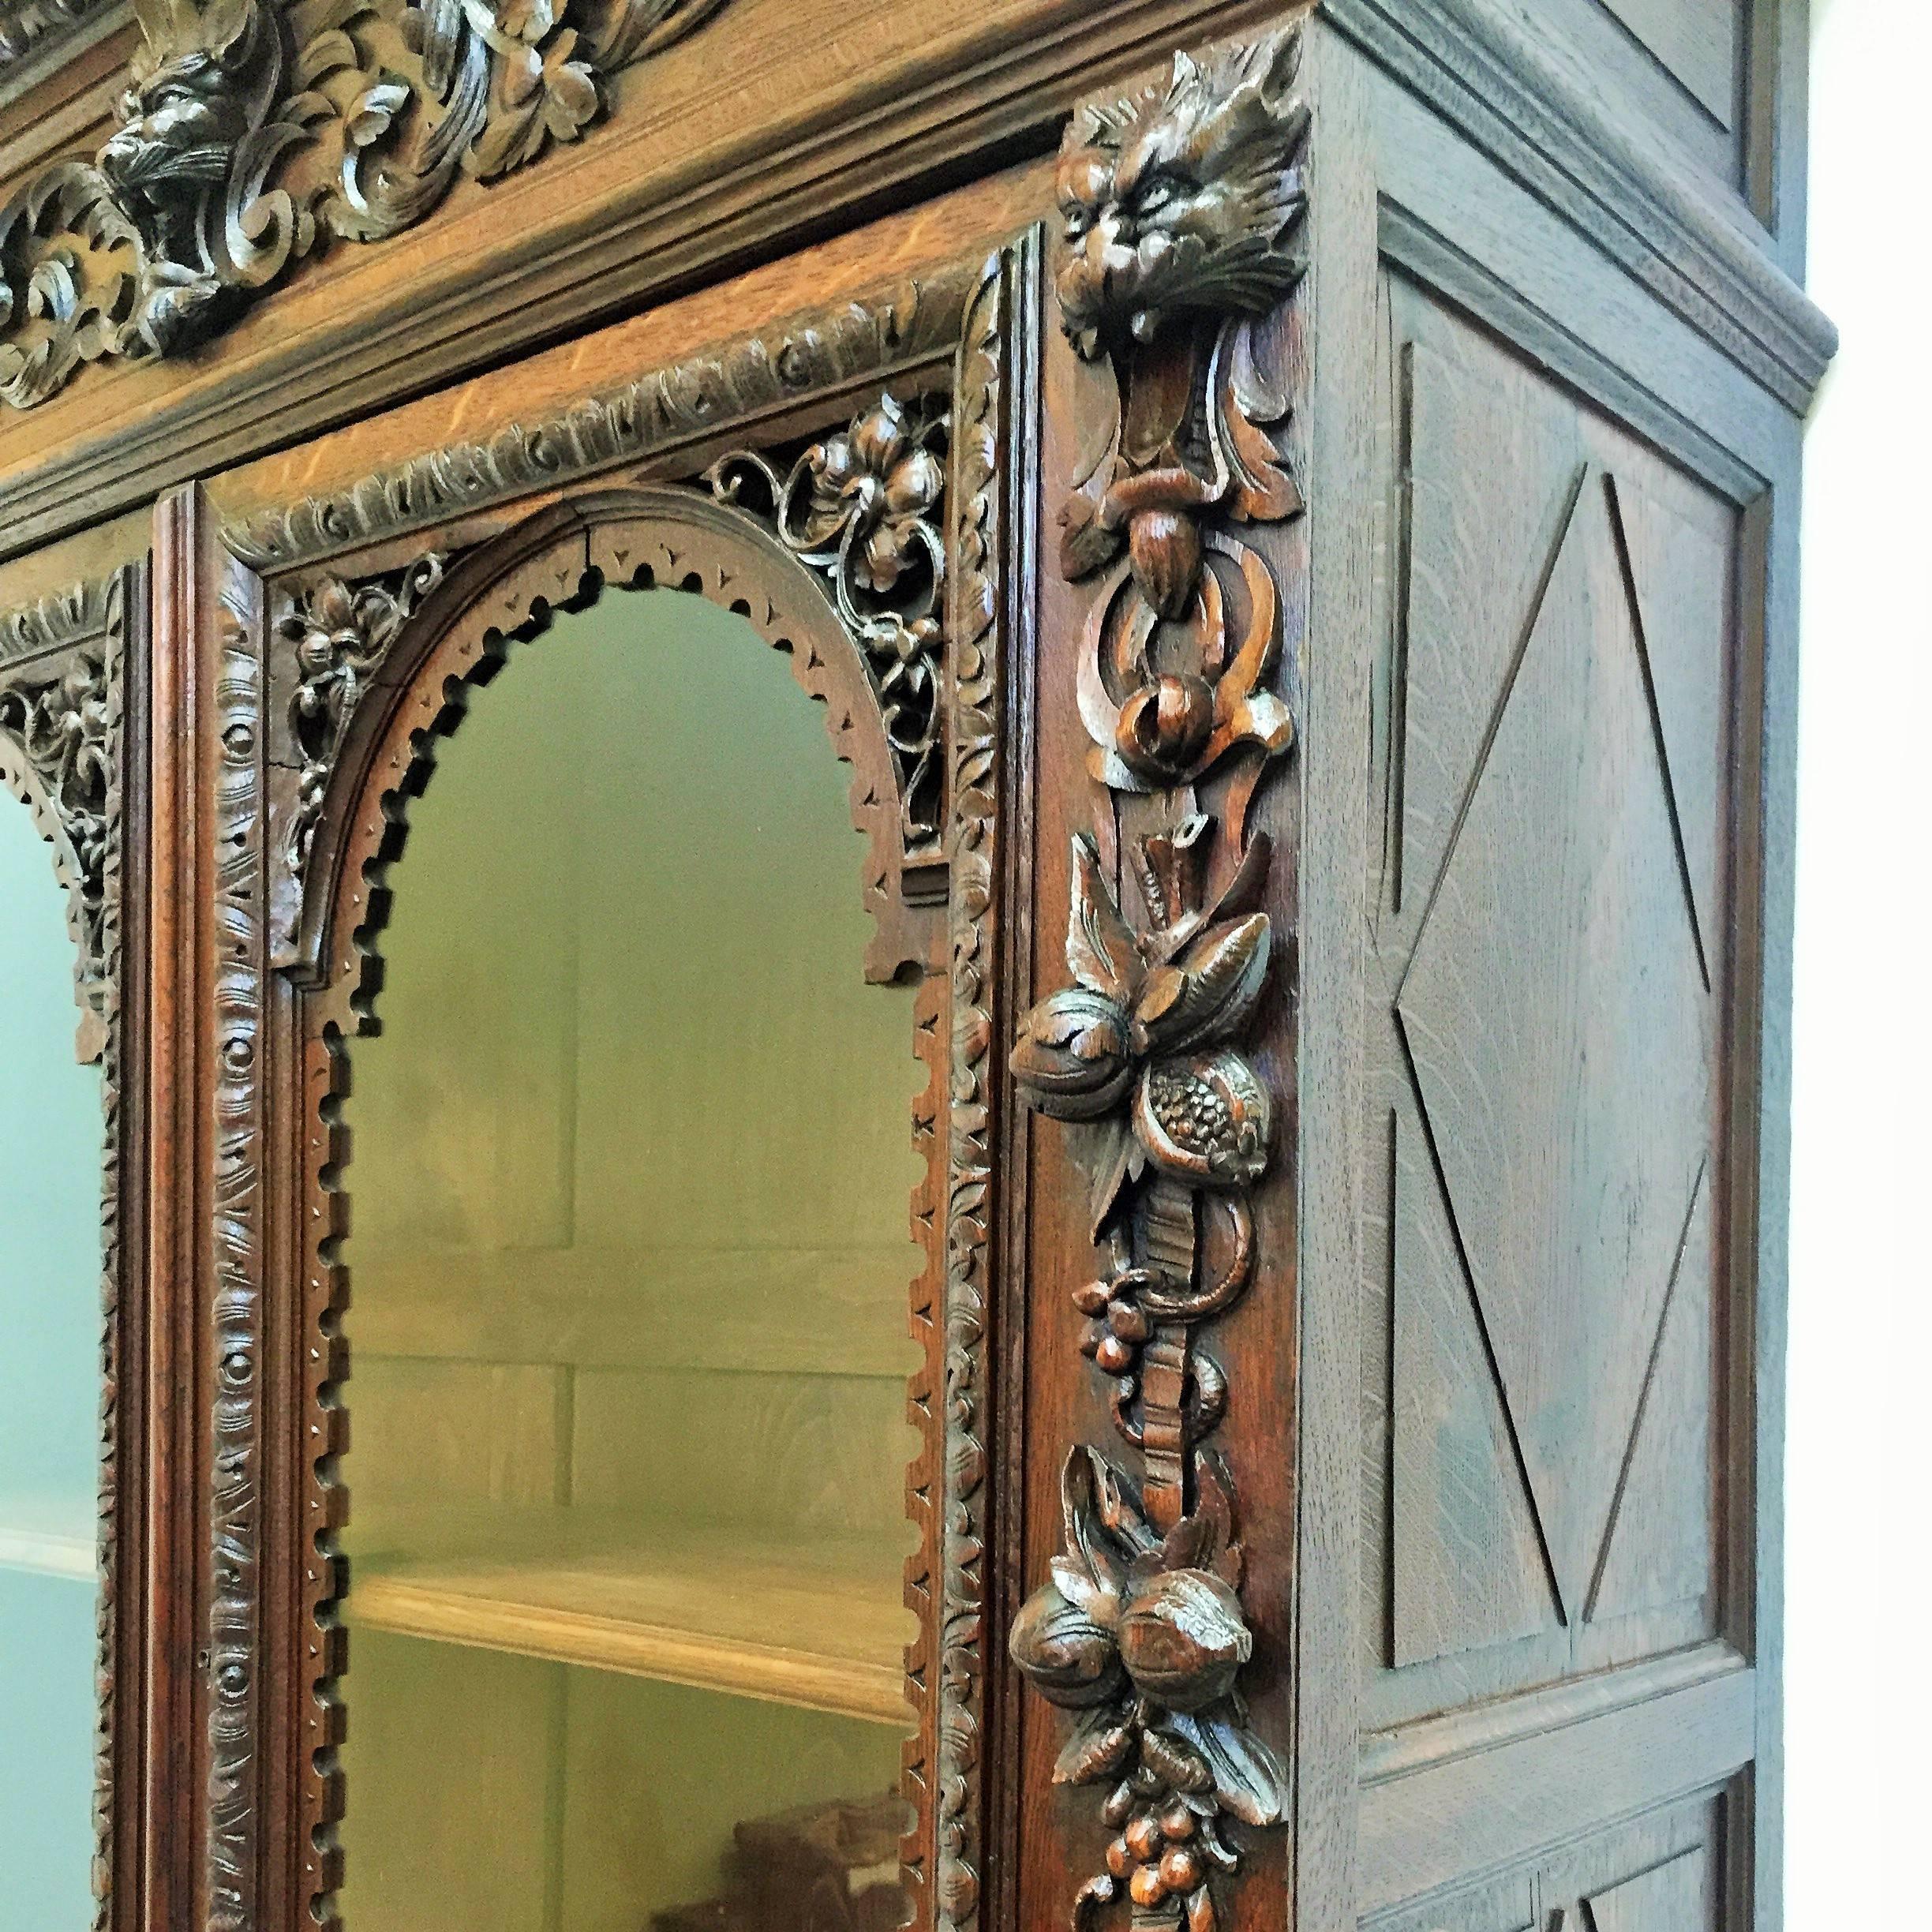 Buffet flamand à deux corps en chêne, exceptionnellement bien sculpté, dans le style néo-renaissance d'Henri II. Cette armoire présente des sculptures très bien articulées en haut-relief de grenades, raisins, vignes, feuilles d'acanthe, guirlandes